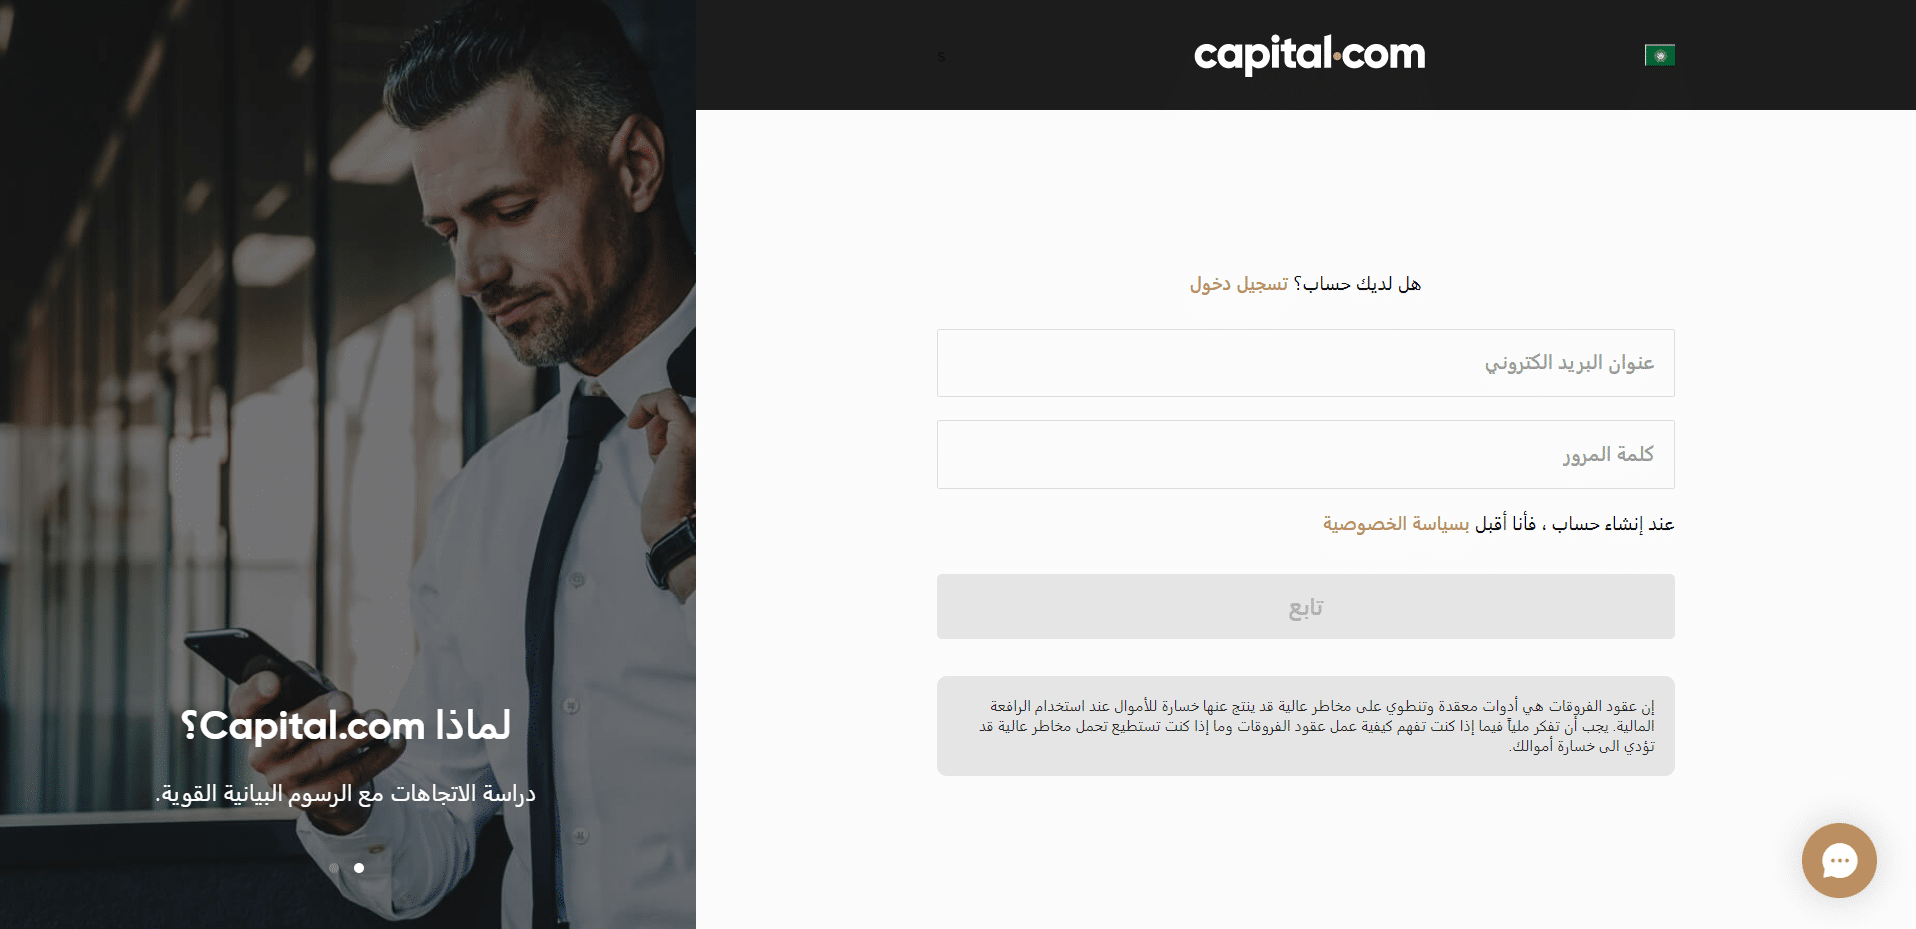 فتح حساب على Capital.com